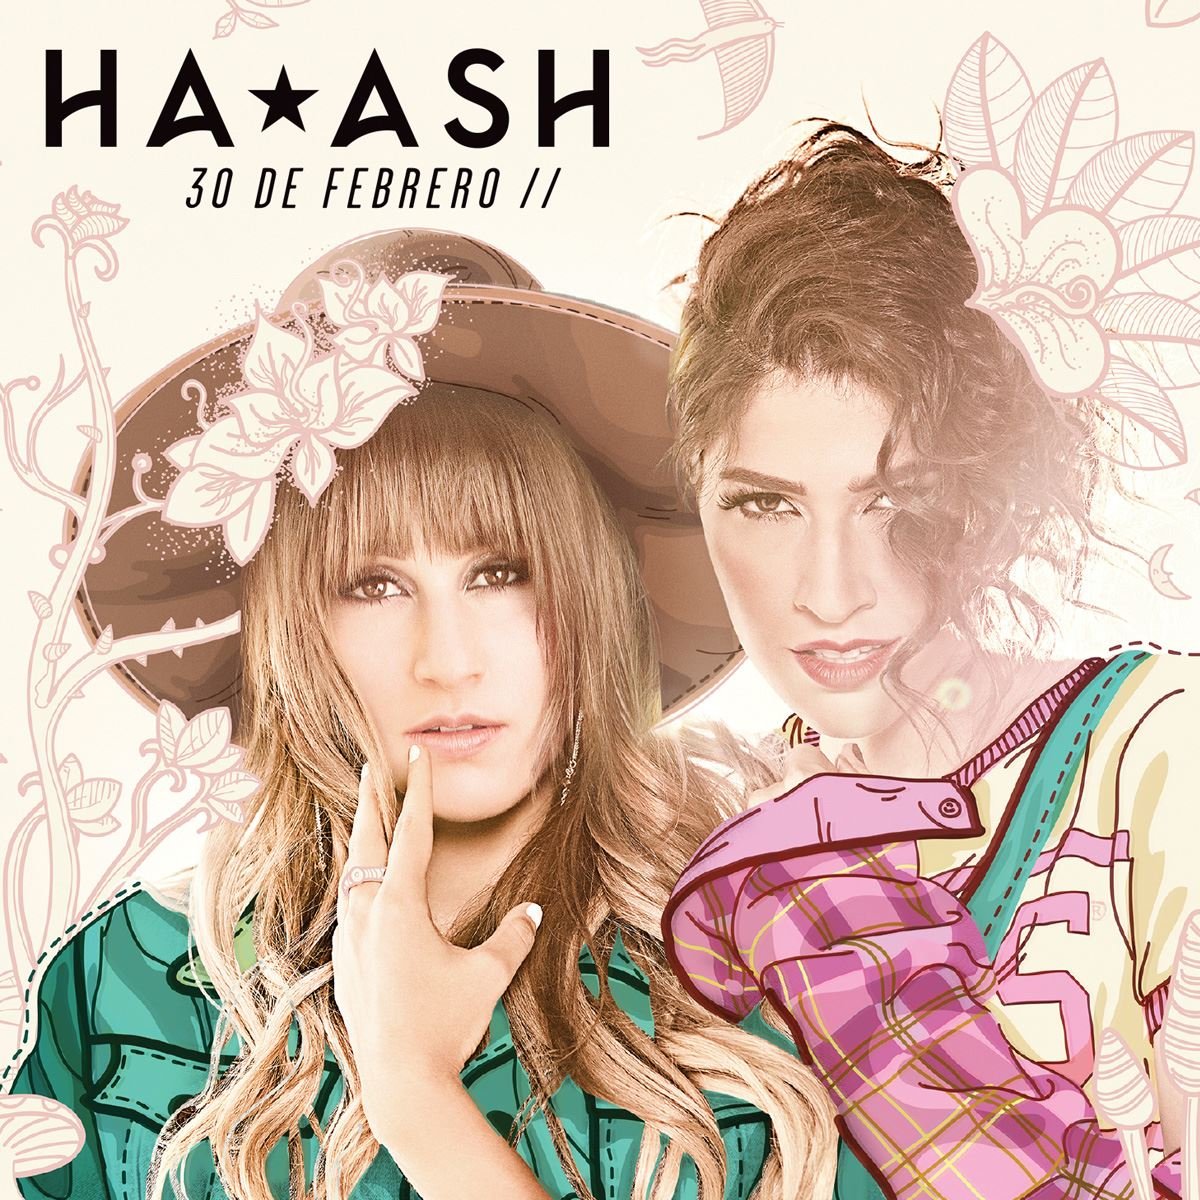 CD/ DVD Ha-Ash "30 de Febrero"